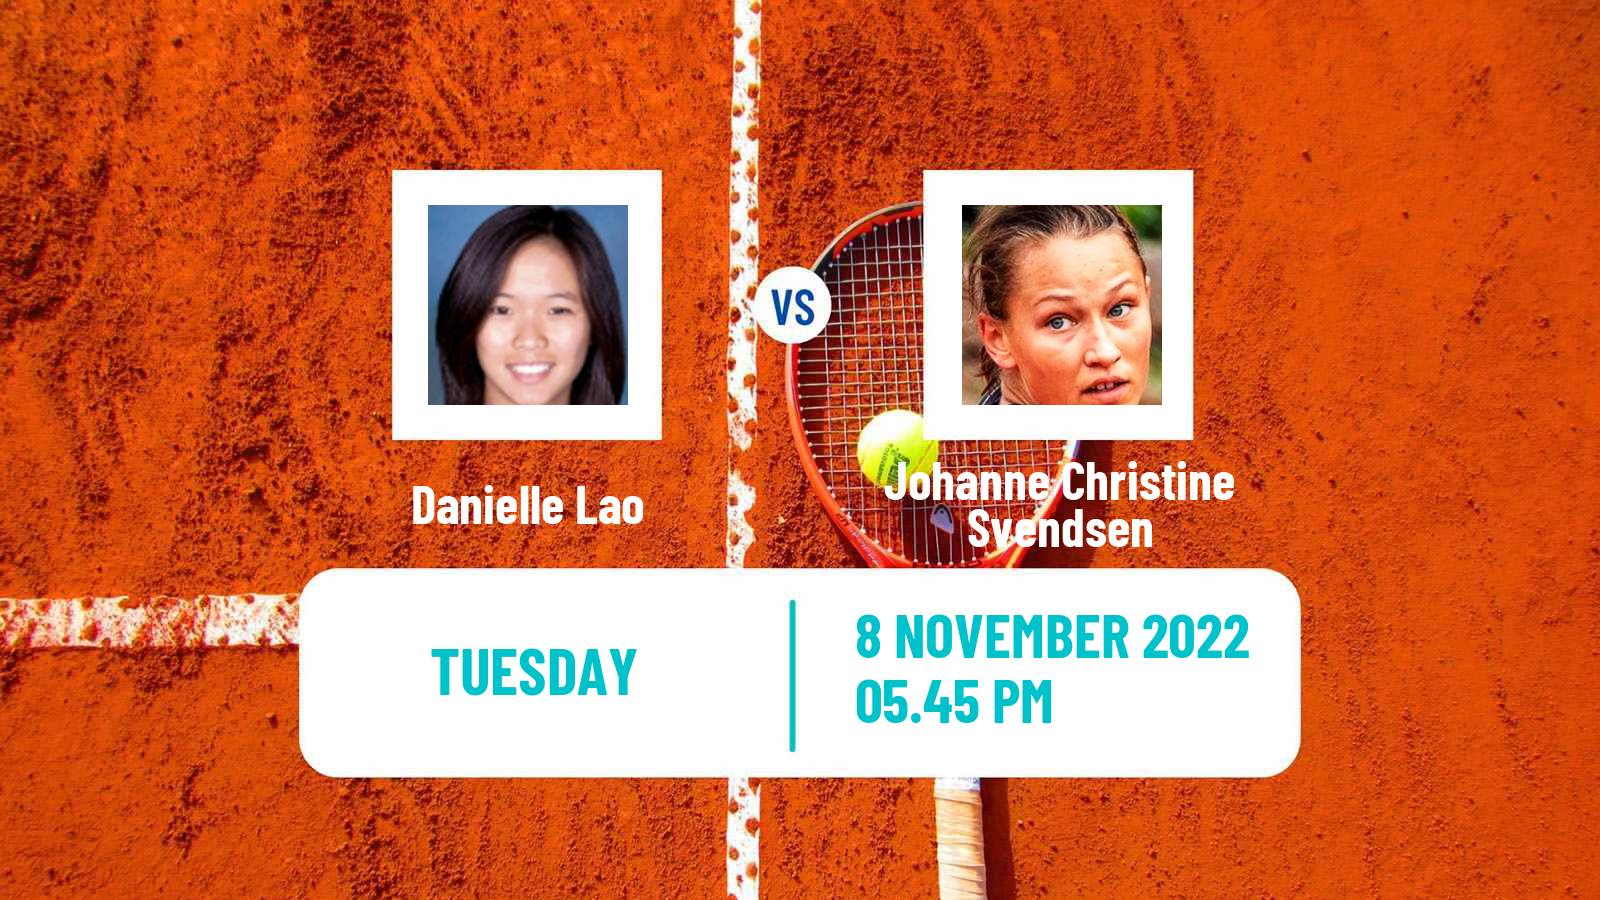 Tennis ITF Tournaments Danielle Lao - Johanne Christine Svendsen